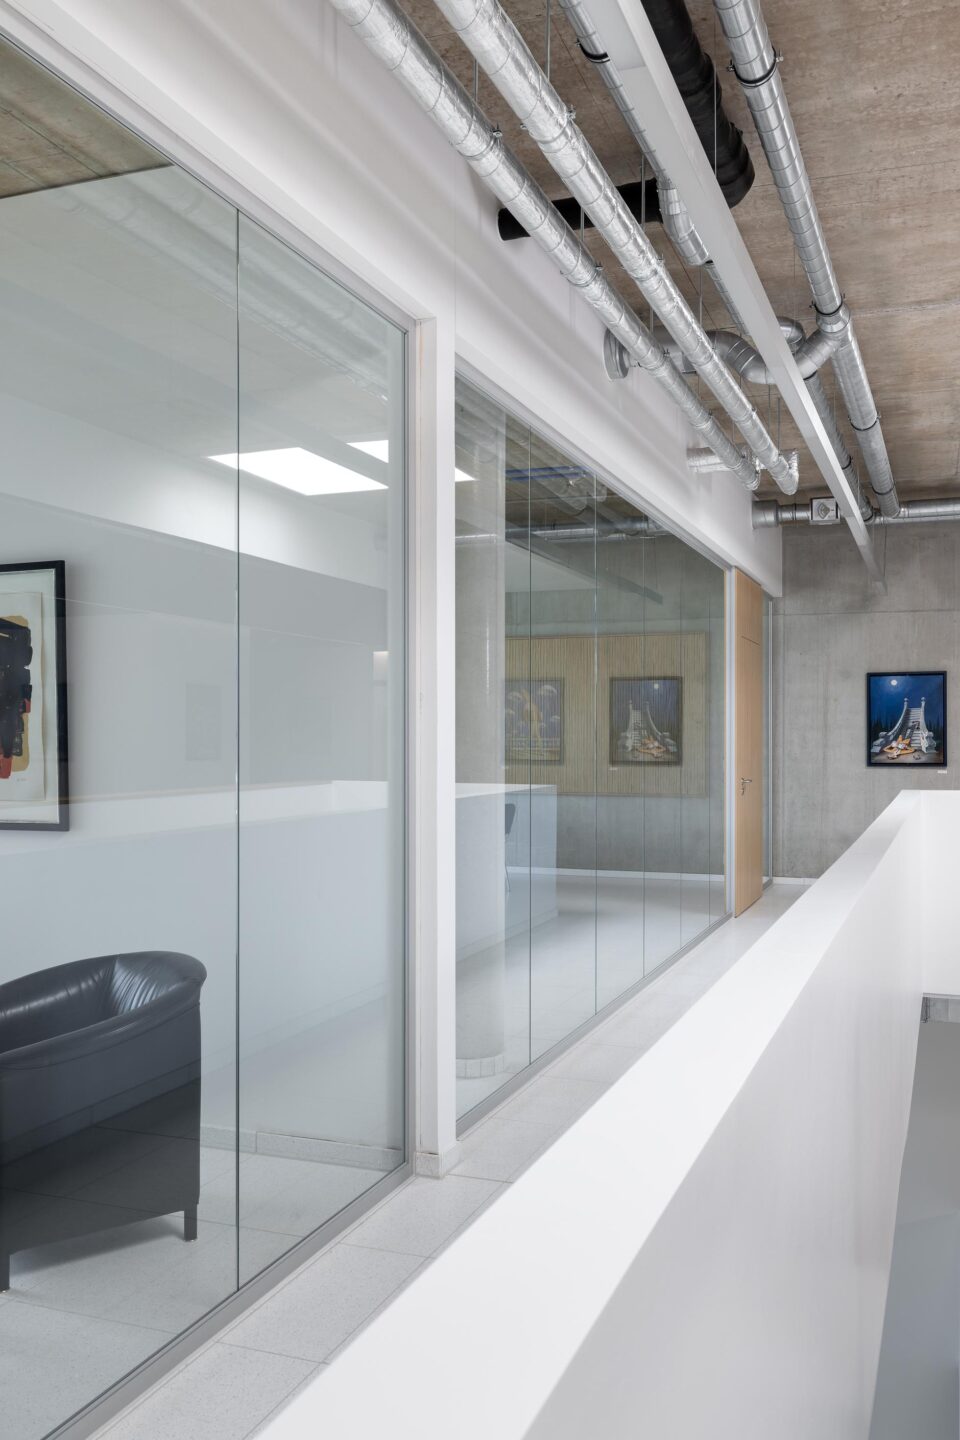 Erhardt + Leimer Elektroanlagen | Glaswände von feco in hellem Bürogebäude